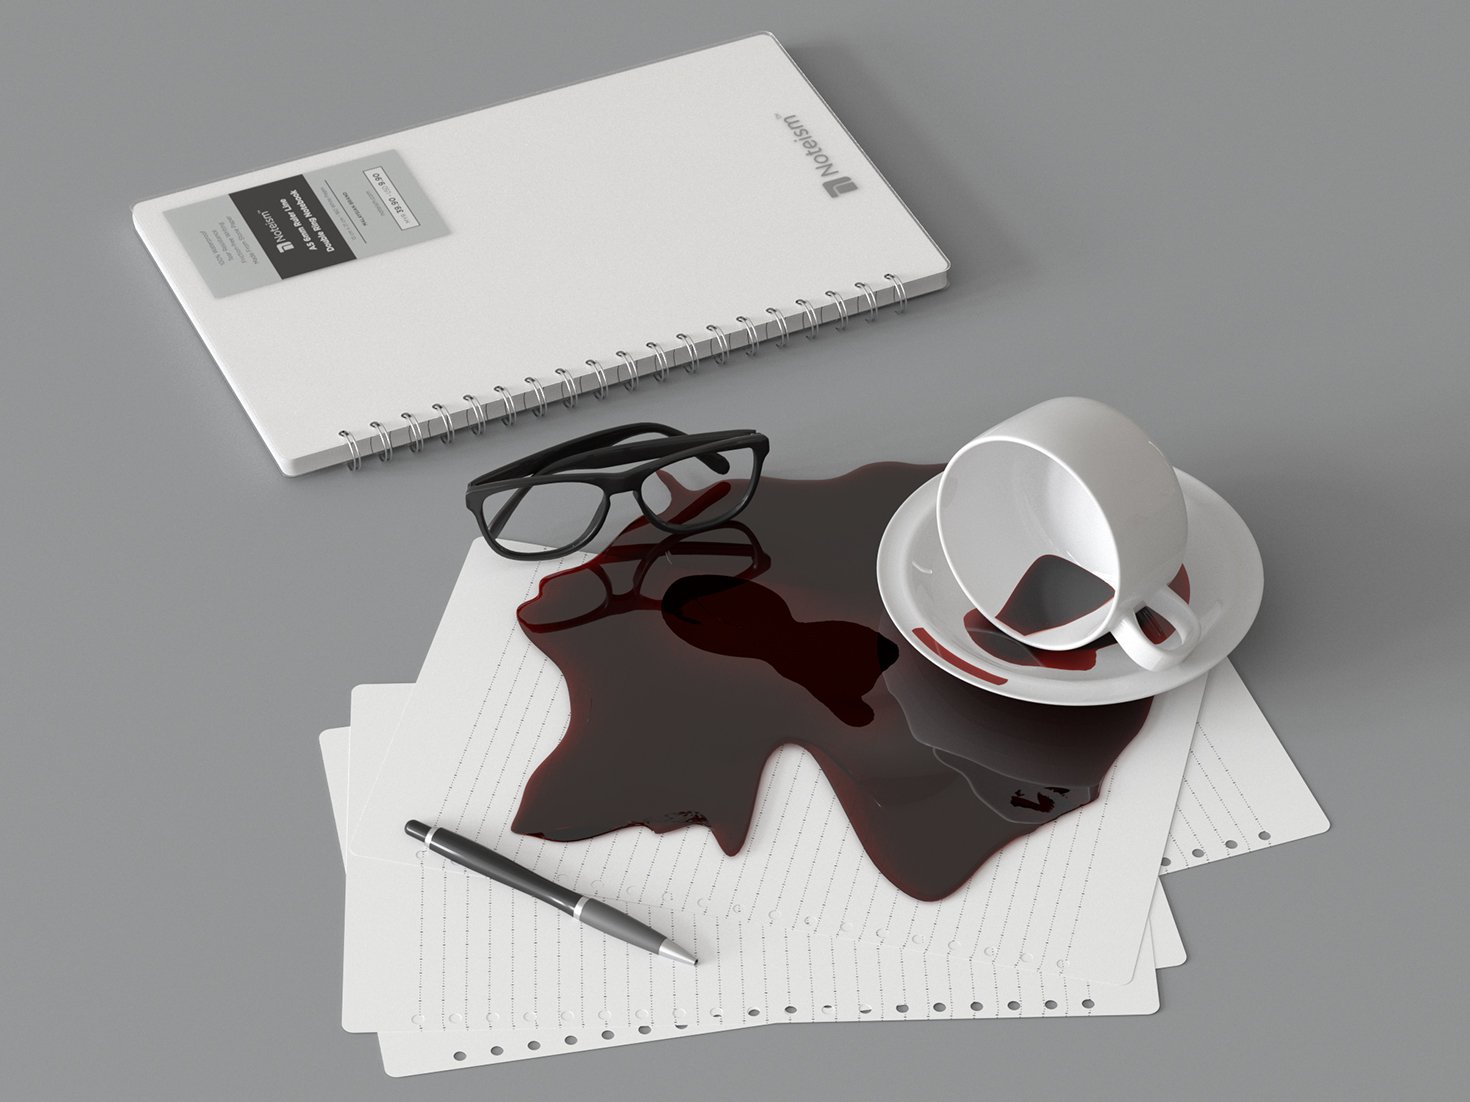 不小心打翻咖啡弄脏笔记本？别担心，拿去清洗一下就好了。笔记本遇水不会烂，但仍会湿，不过只要在室内用风扇晾干一下就好了。